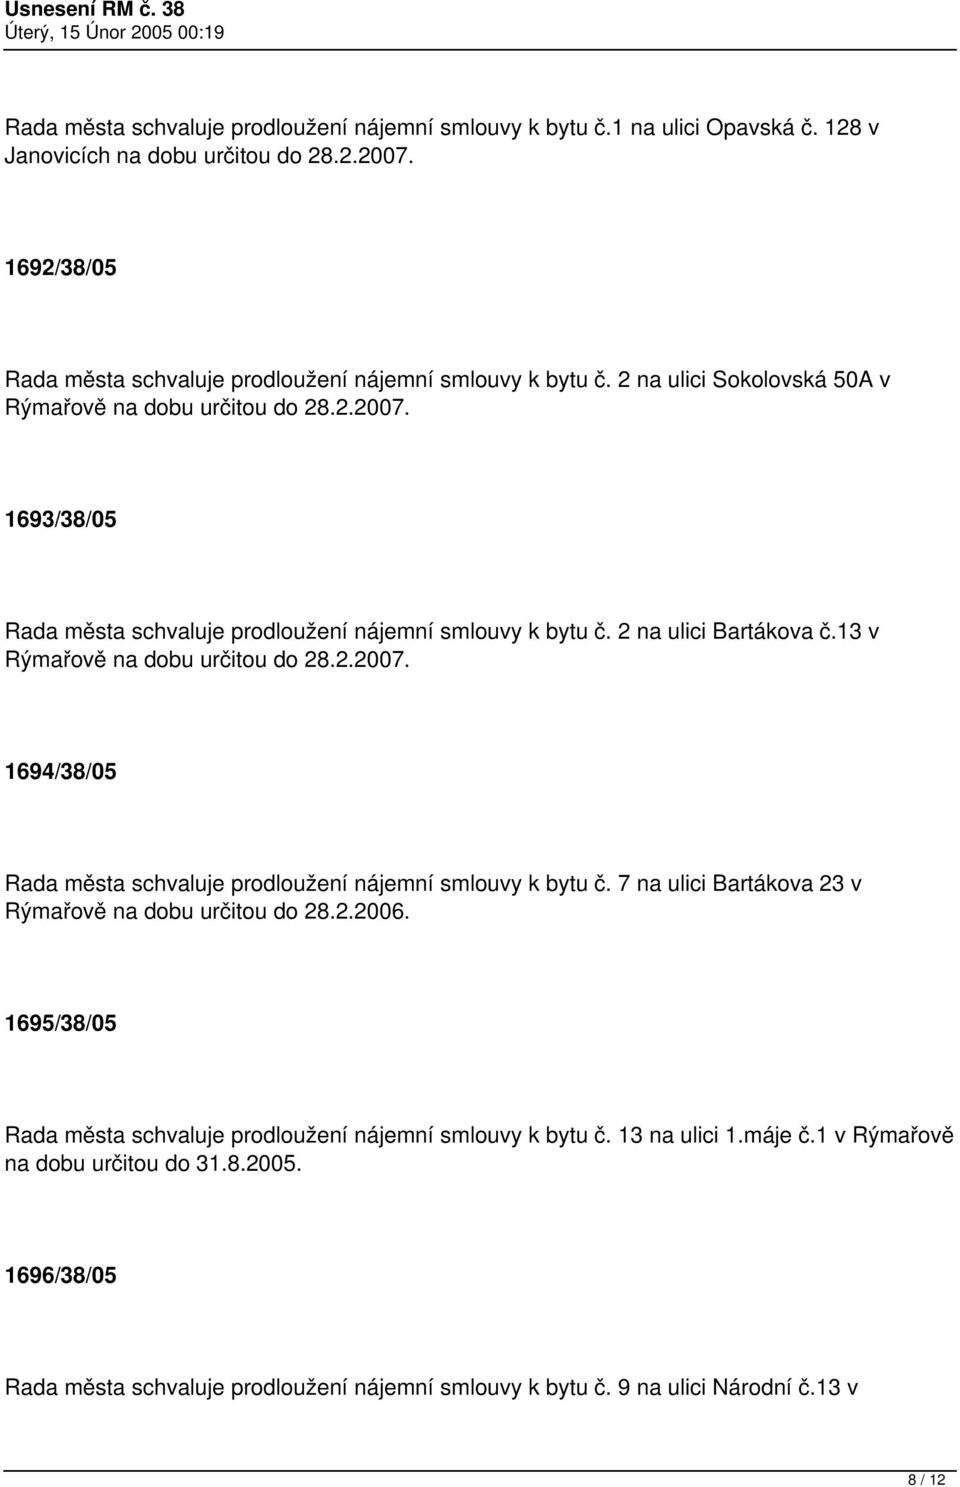 1693/38/05 Rada města schvaluje prodloužení nájemní smlouvy k bytu č. 2 na ulici Bartákova č.13 v Rýmařově na dobu určitou do 28.2.2007.